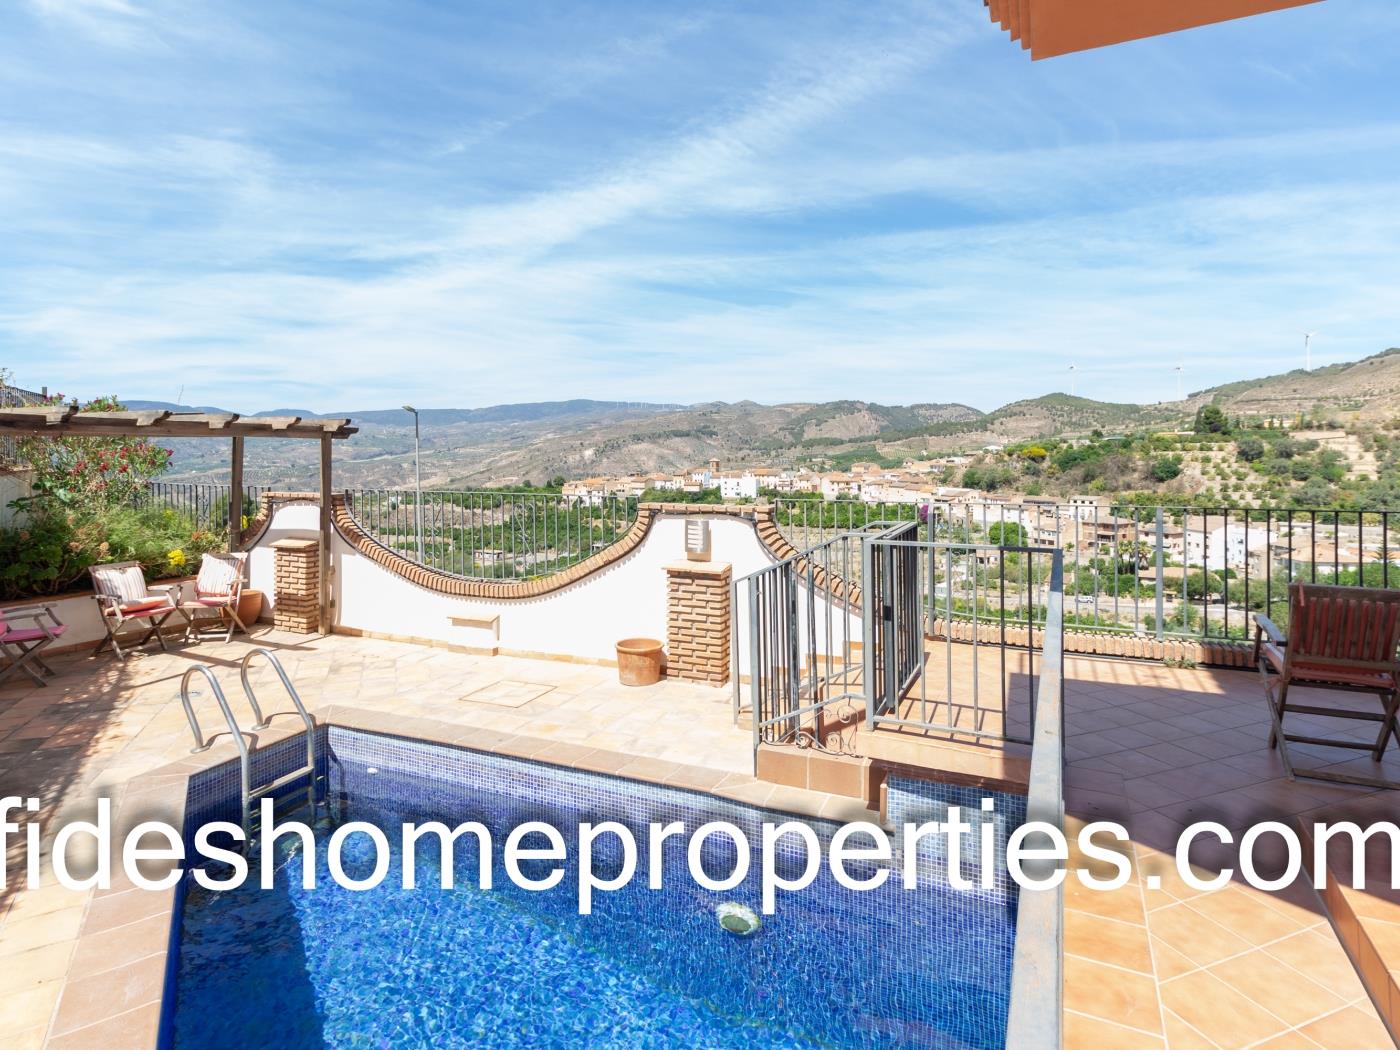 Chalet independiente con terraza, jardín, piscina y magníficas vistas en Lecrín. en Talará